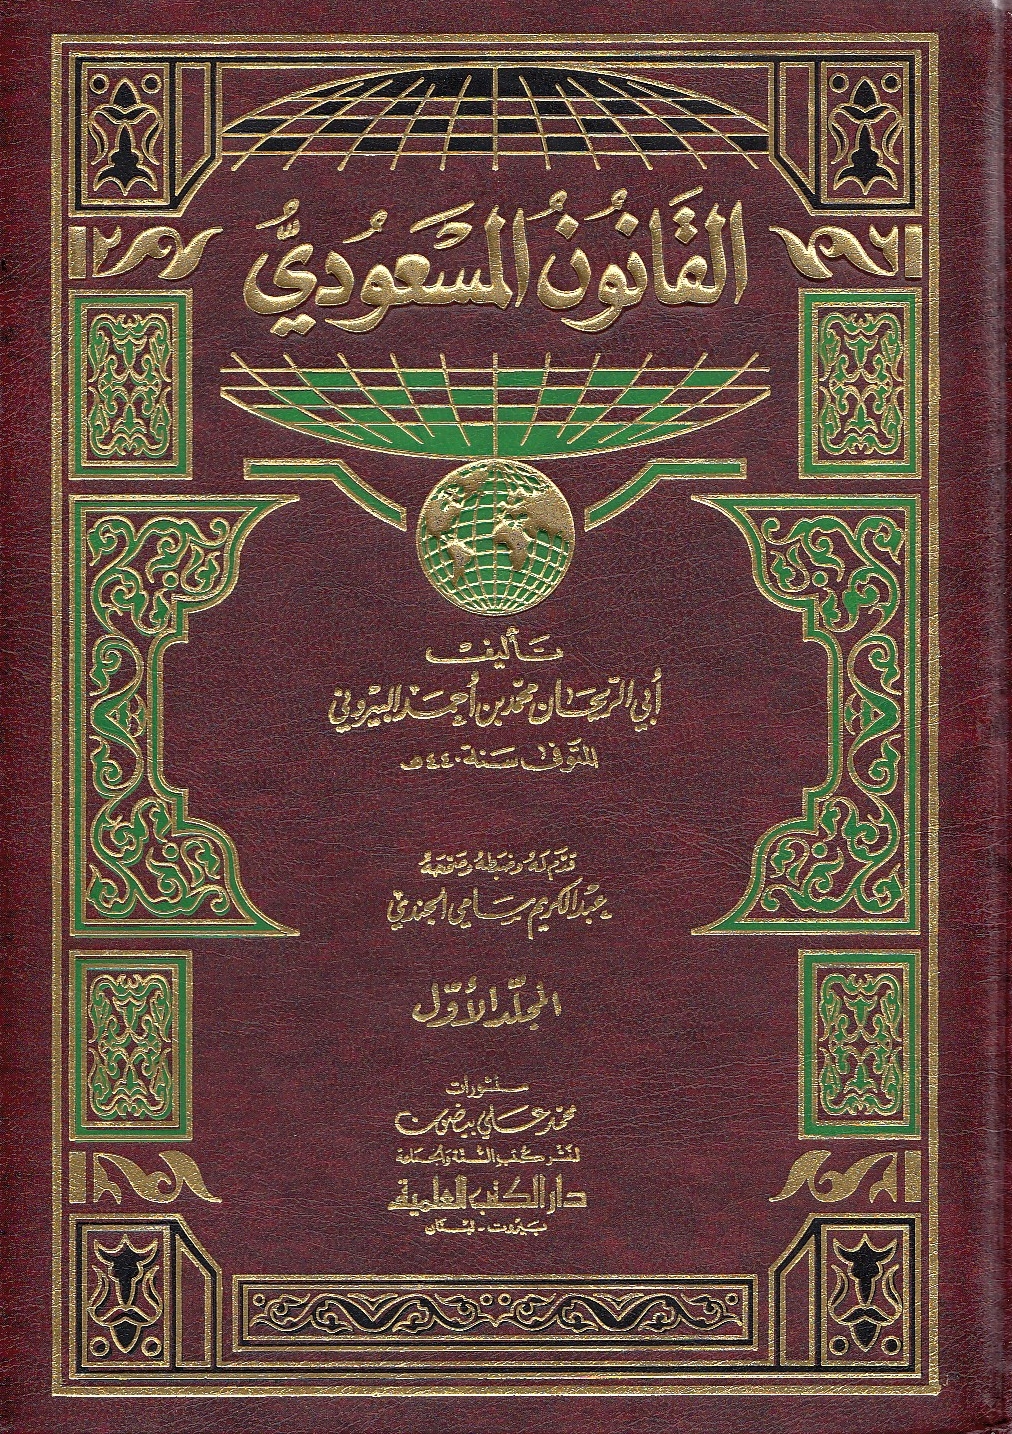 Al-Qanun al-Mas'udi.  ed. by 'A.K.S. al-Jundi